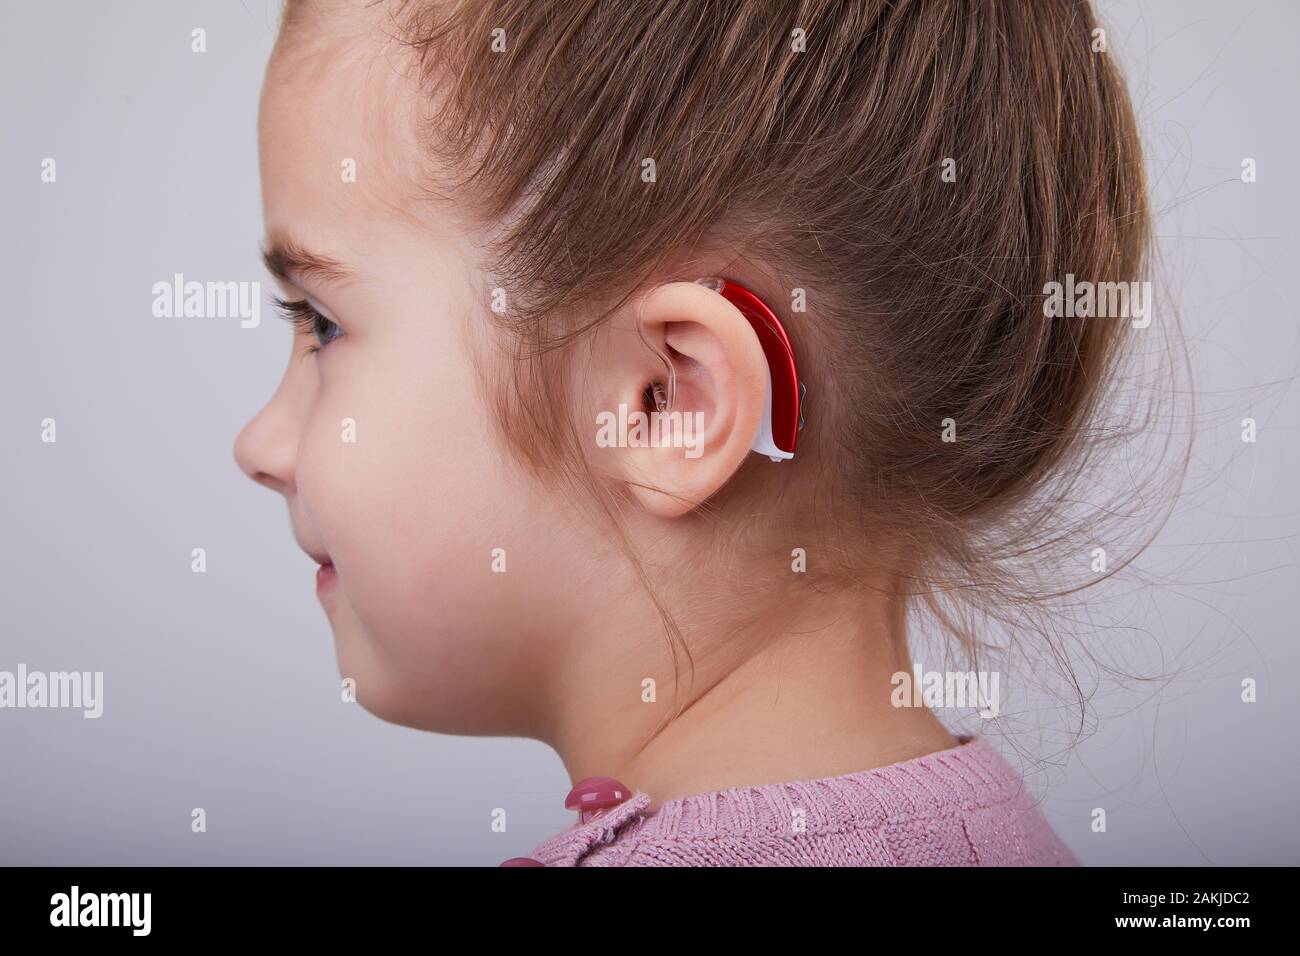 https://c8.alamy.com/compit/2akjdc2/apparecchi-acustici-nell-orecchio-di-young-girl-bambina-che-indossa-un-apparecchio-acustico-scatto-in-studio-2akjdc2.jpg